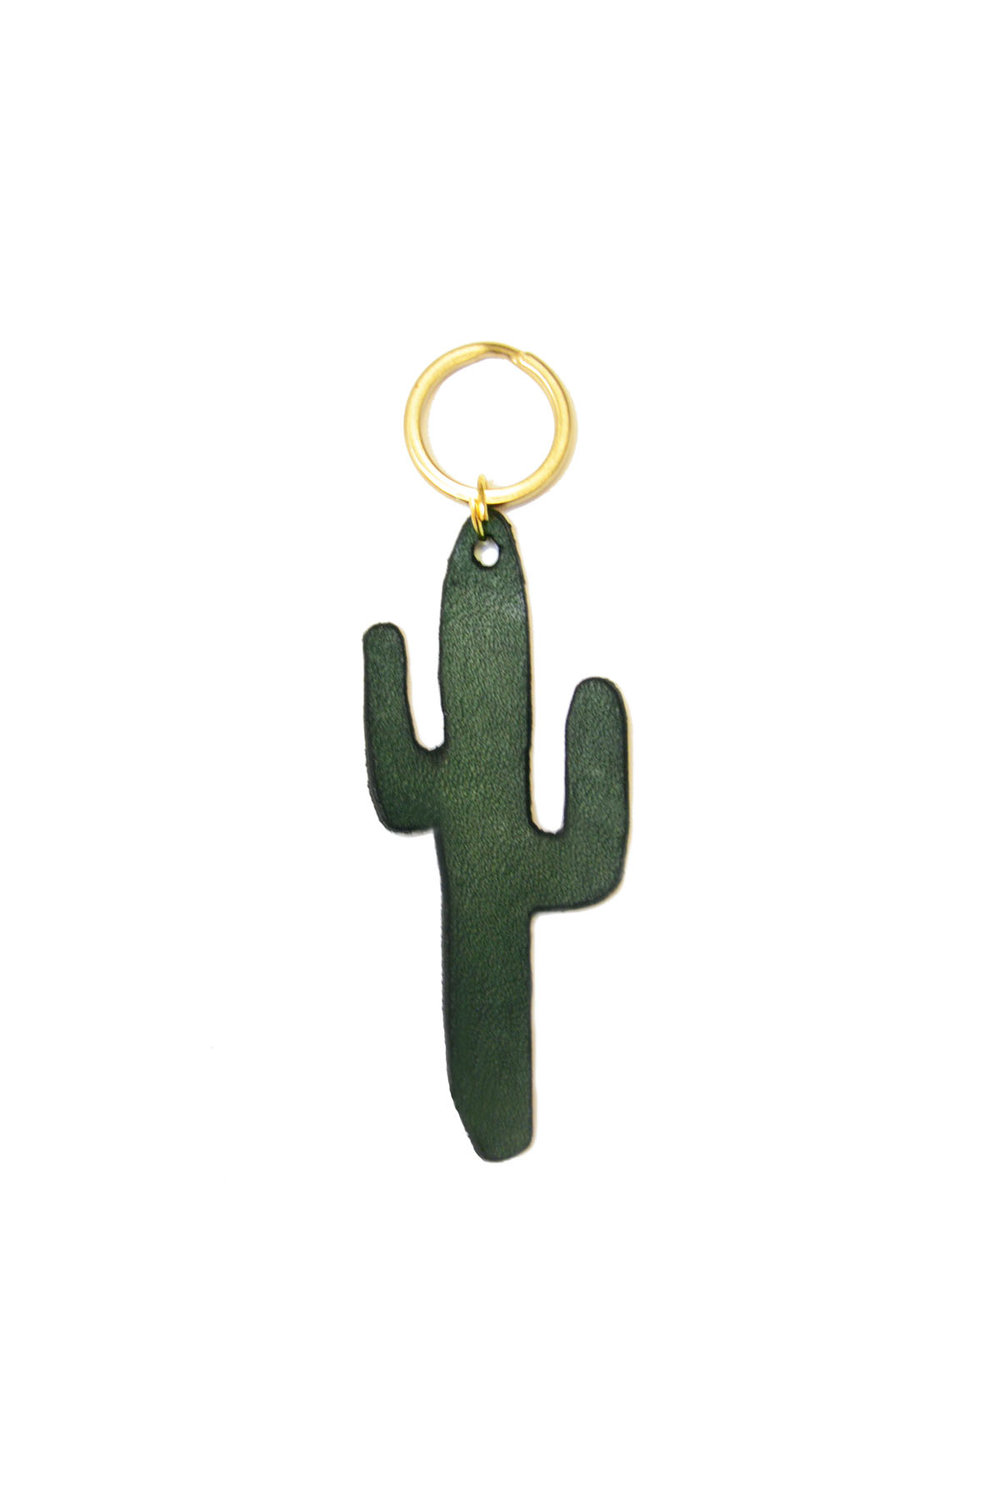 Cactus Floral House or Birds Clear Acrylic Keychain for Keys